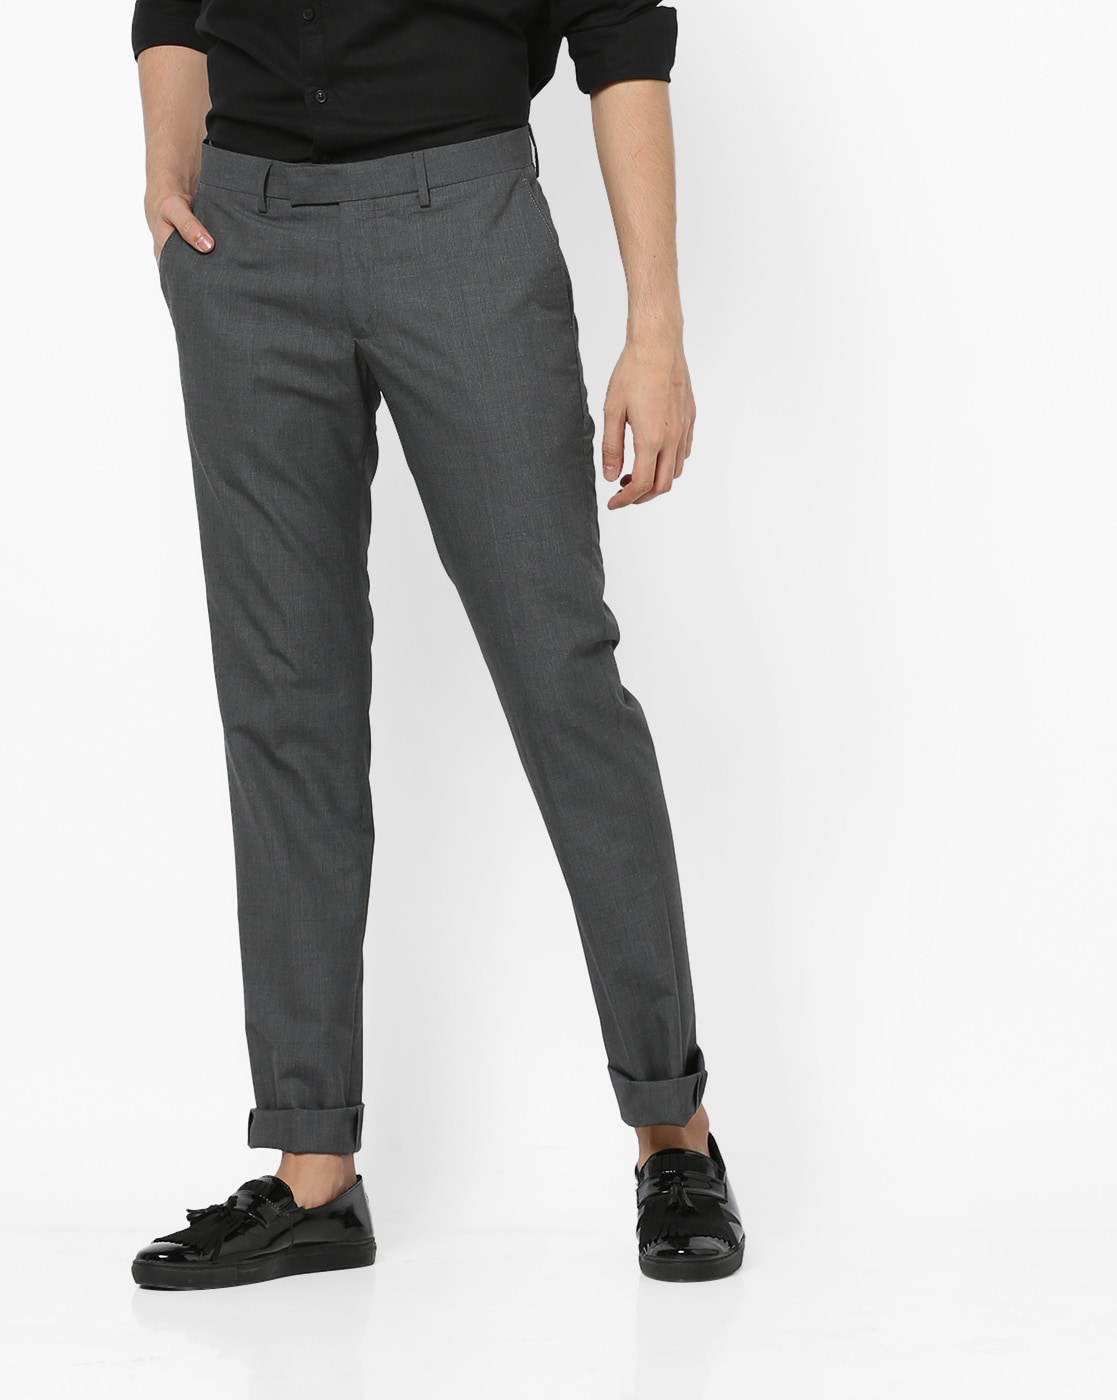 Display 114+ dark grey trousers mens best